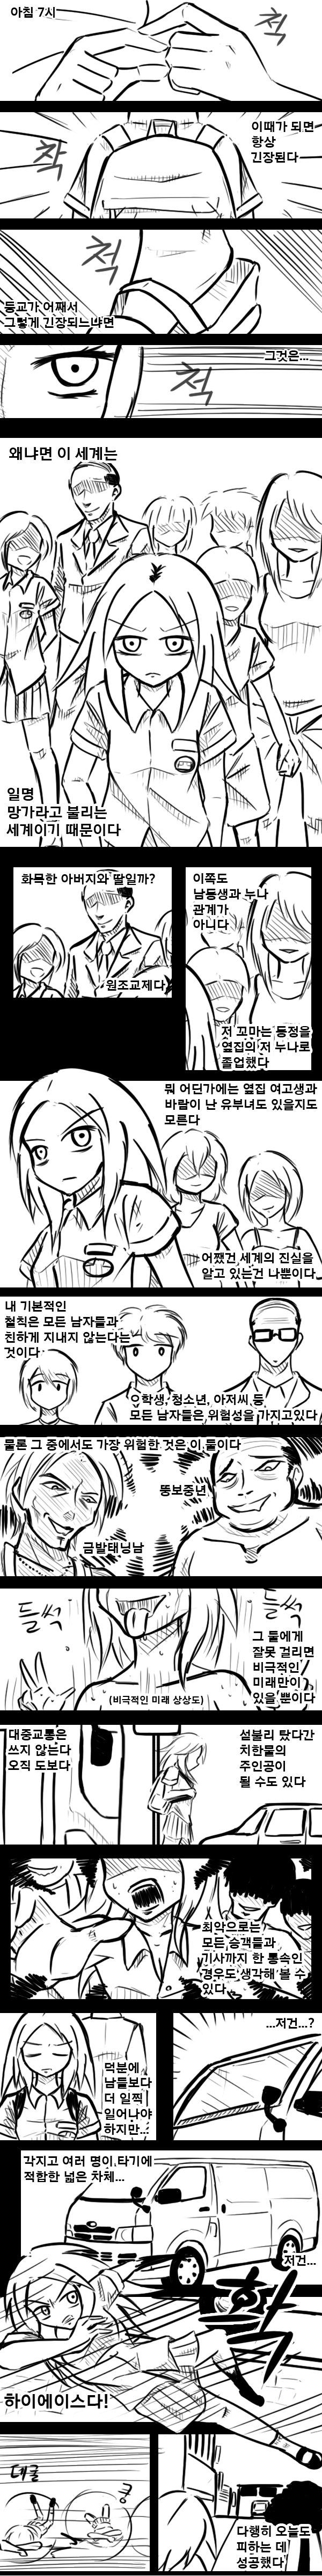 해연 갤 오메가 아이돌